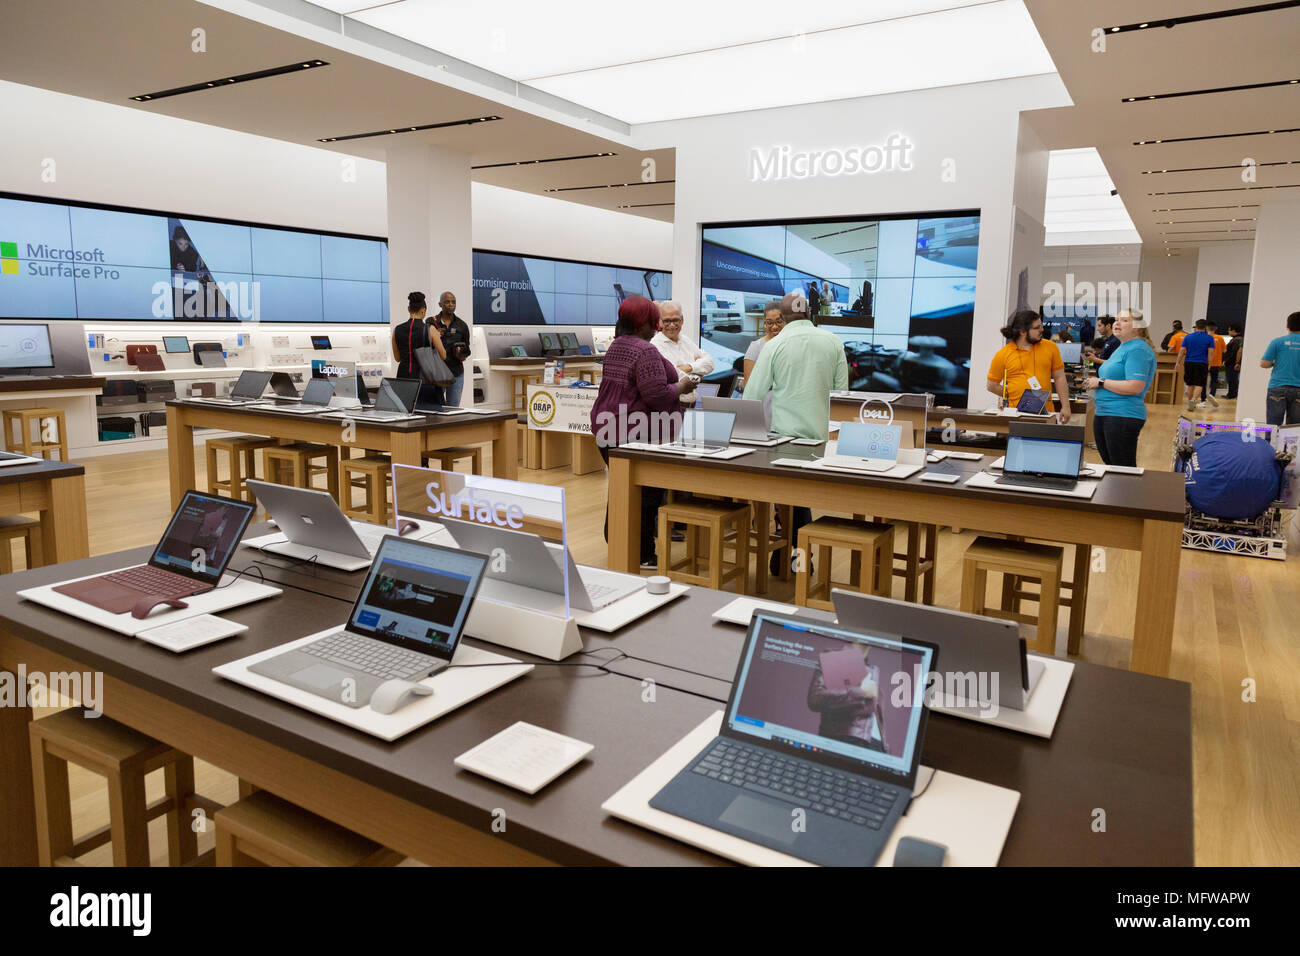 Leute einkaufen im Microsoft Store, der Galleria Mall, Houston, Texas, Vereinigte Staaten von Amerika Stockfoto